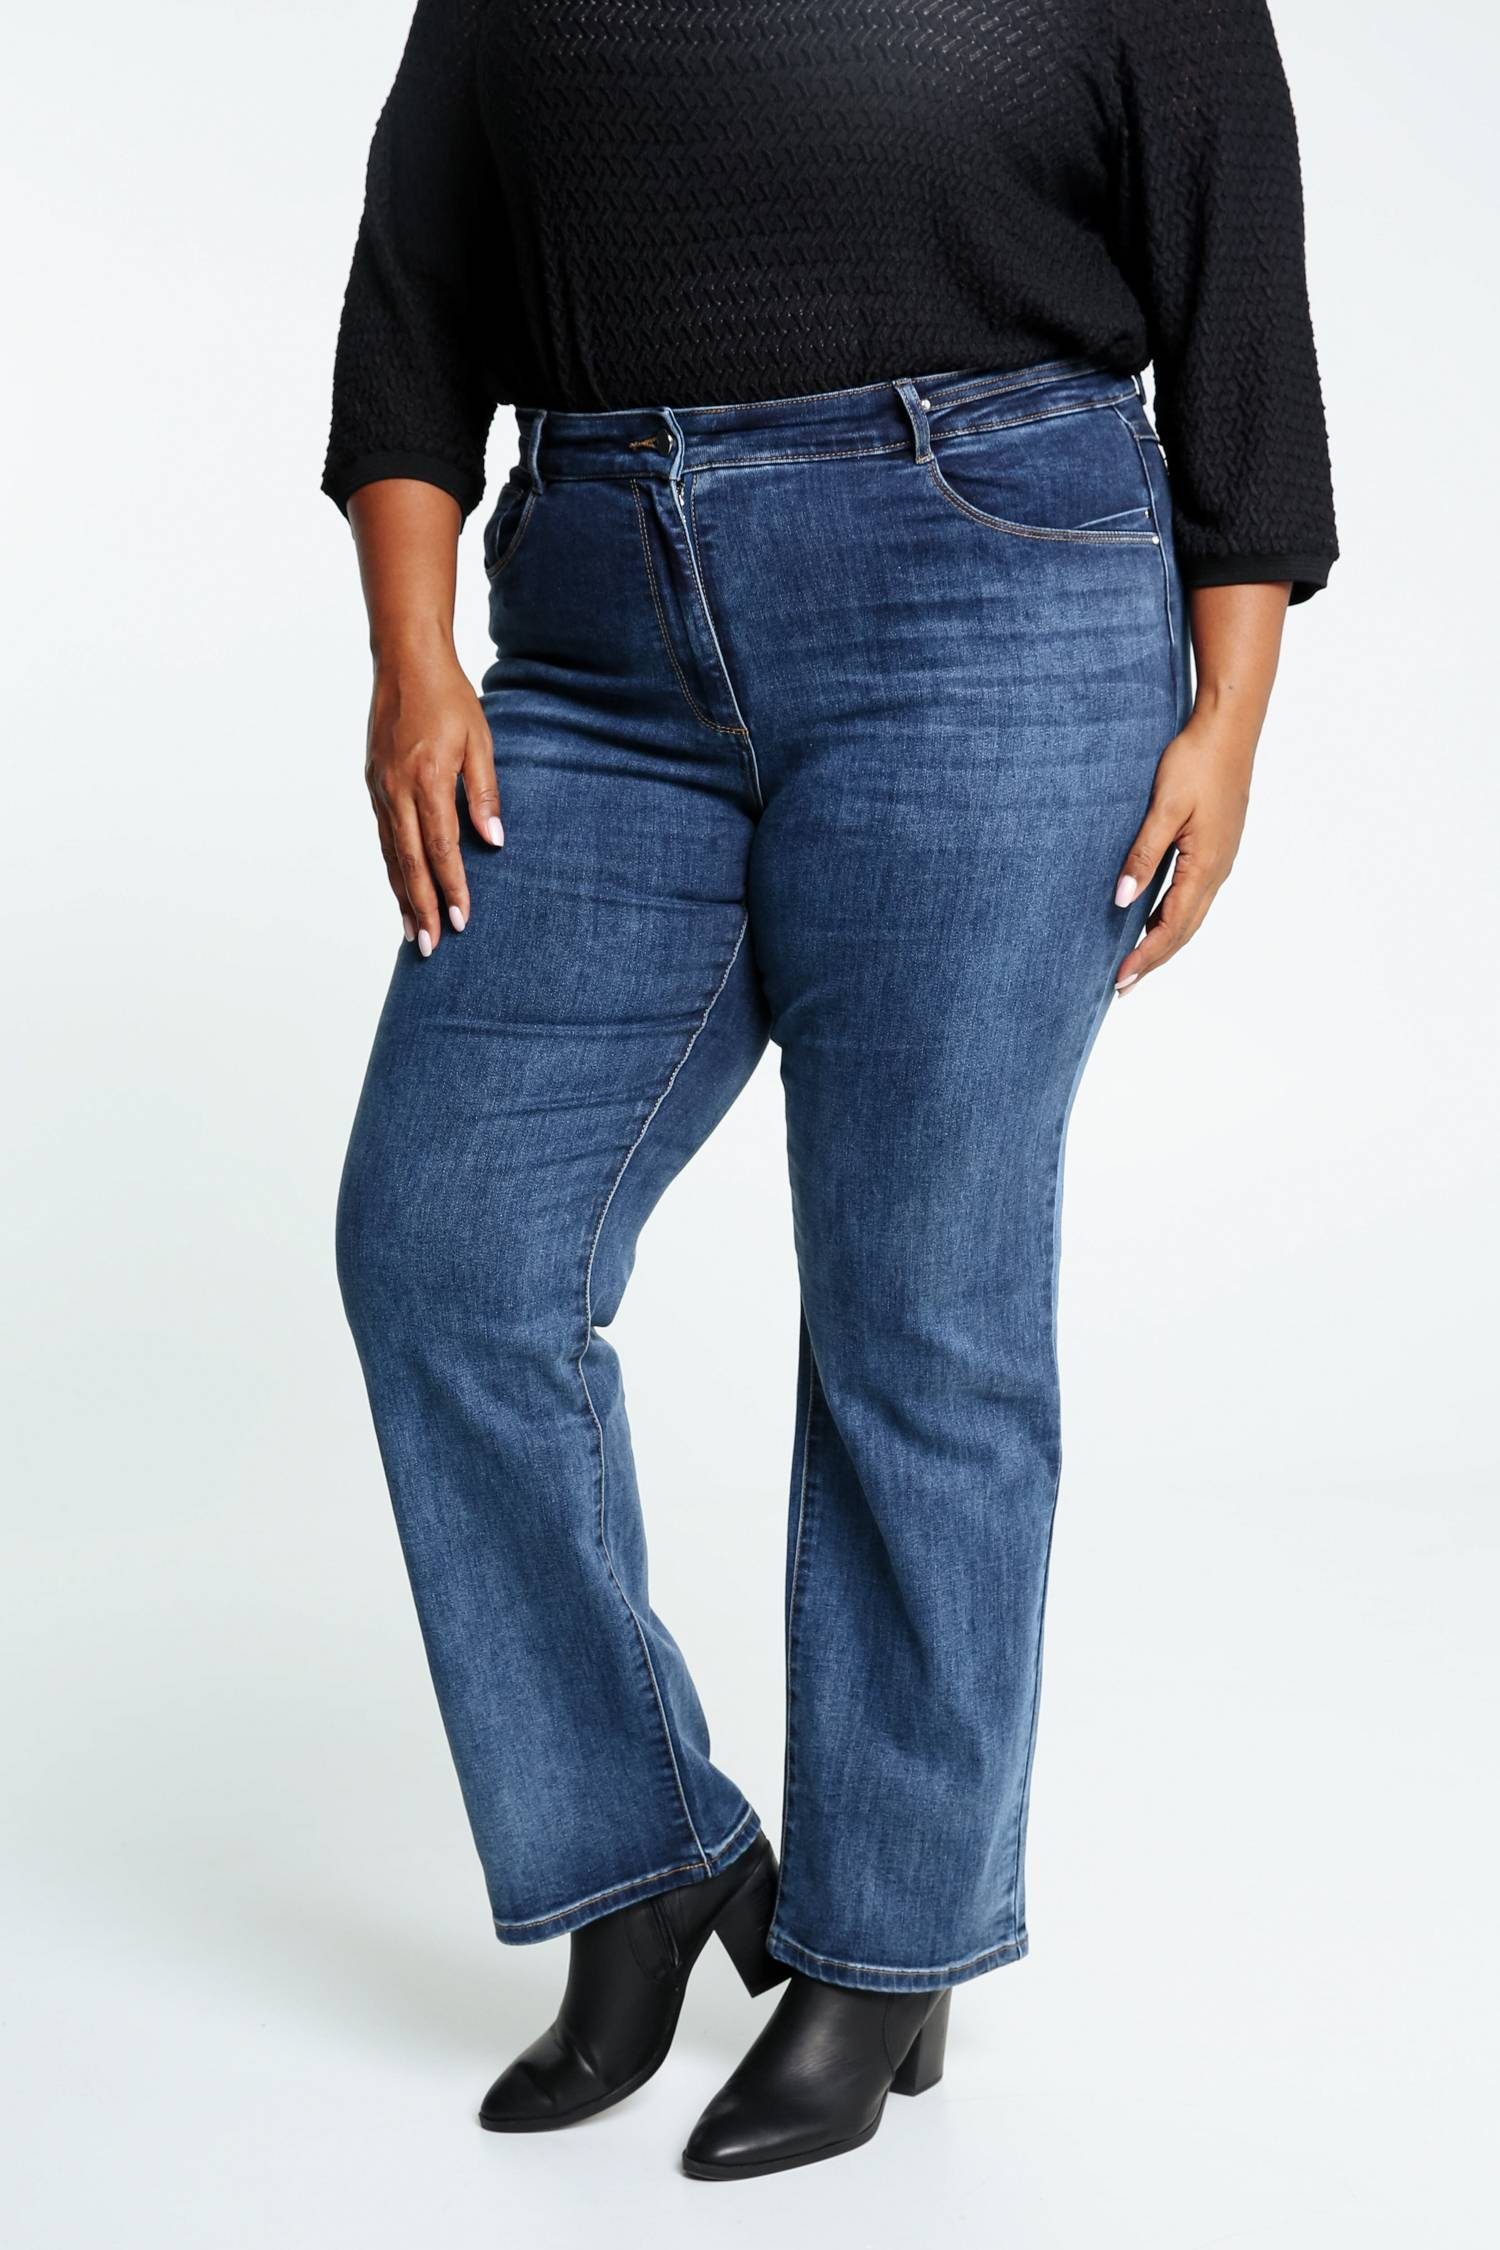 Mia Paprika 5-Pocket-Jeans